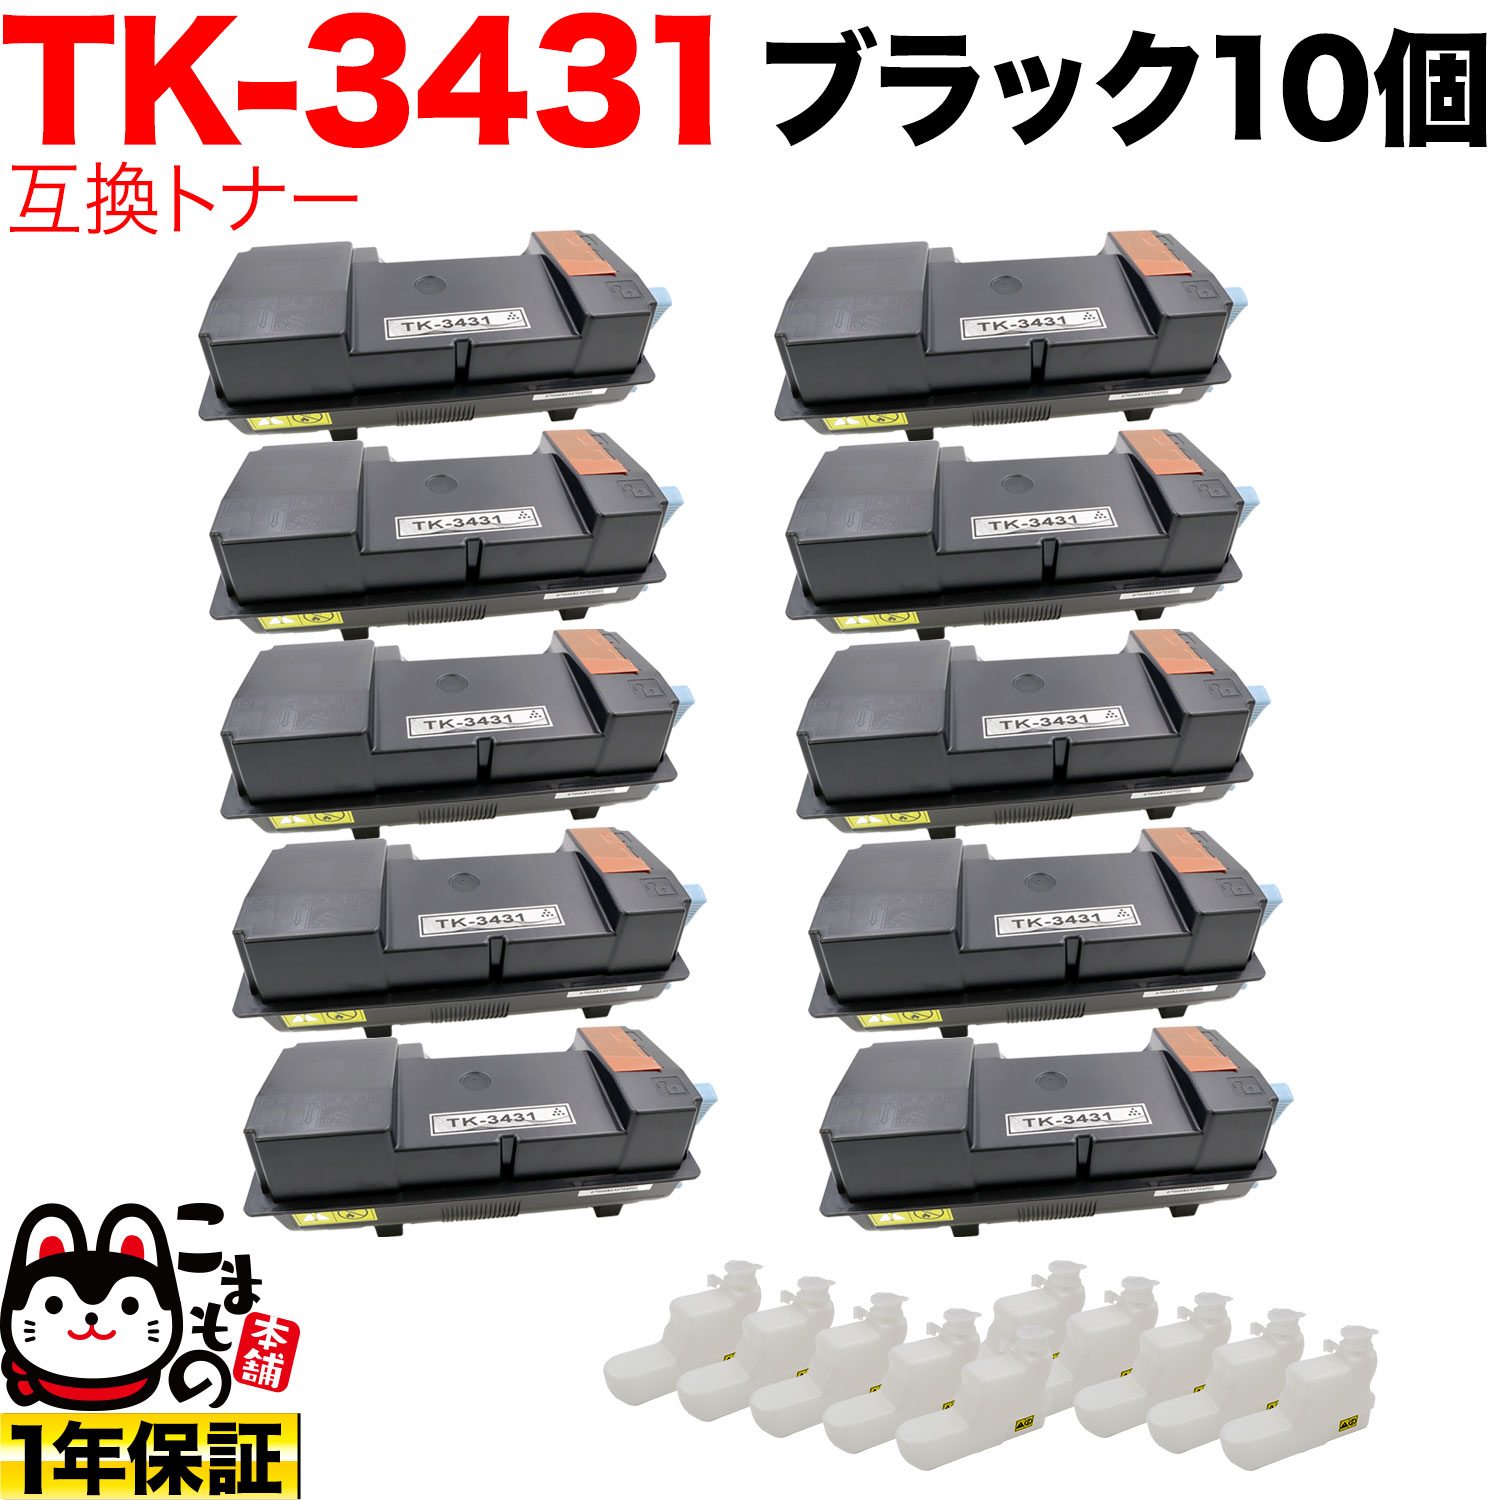 京セラミタ用 TK-3431 互換トナー 10本セット 【送料無料】　ブラック 10個セット